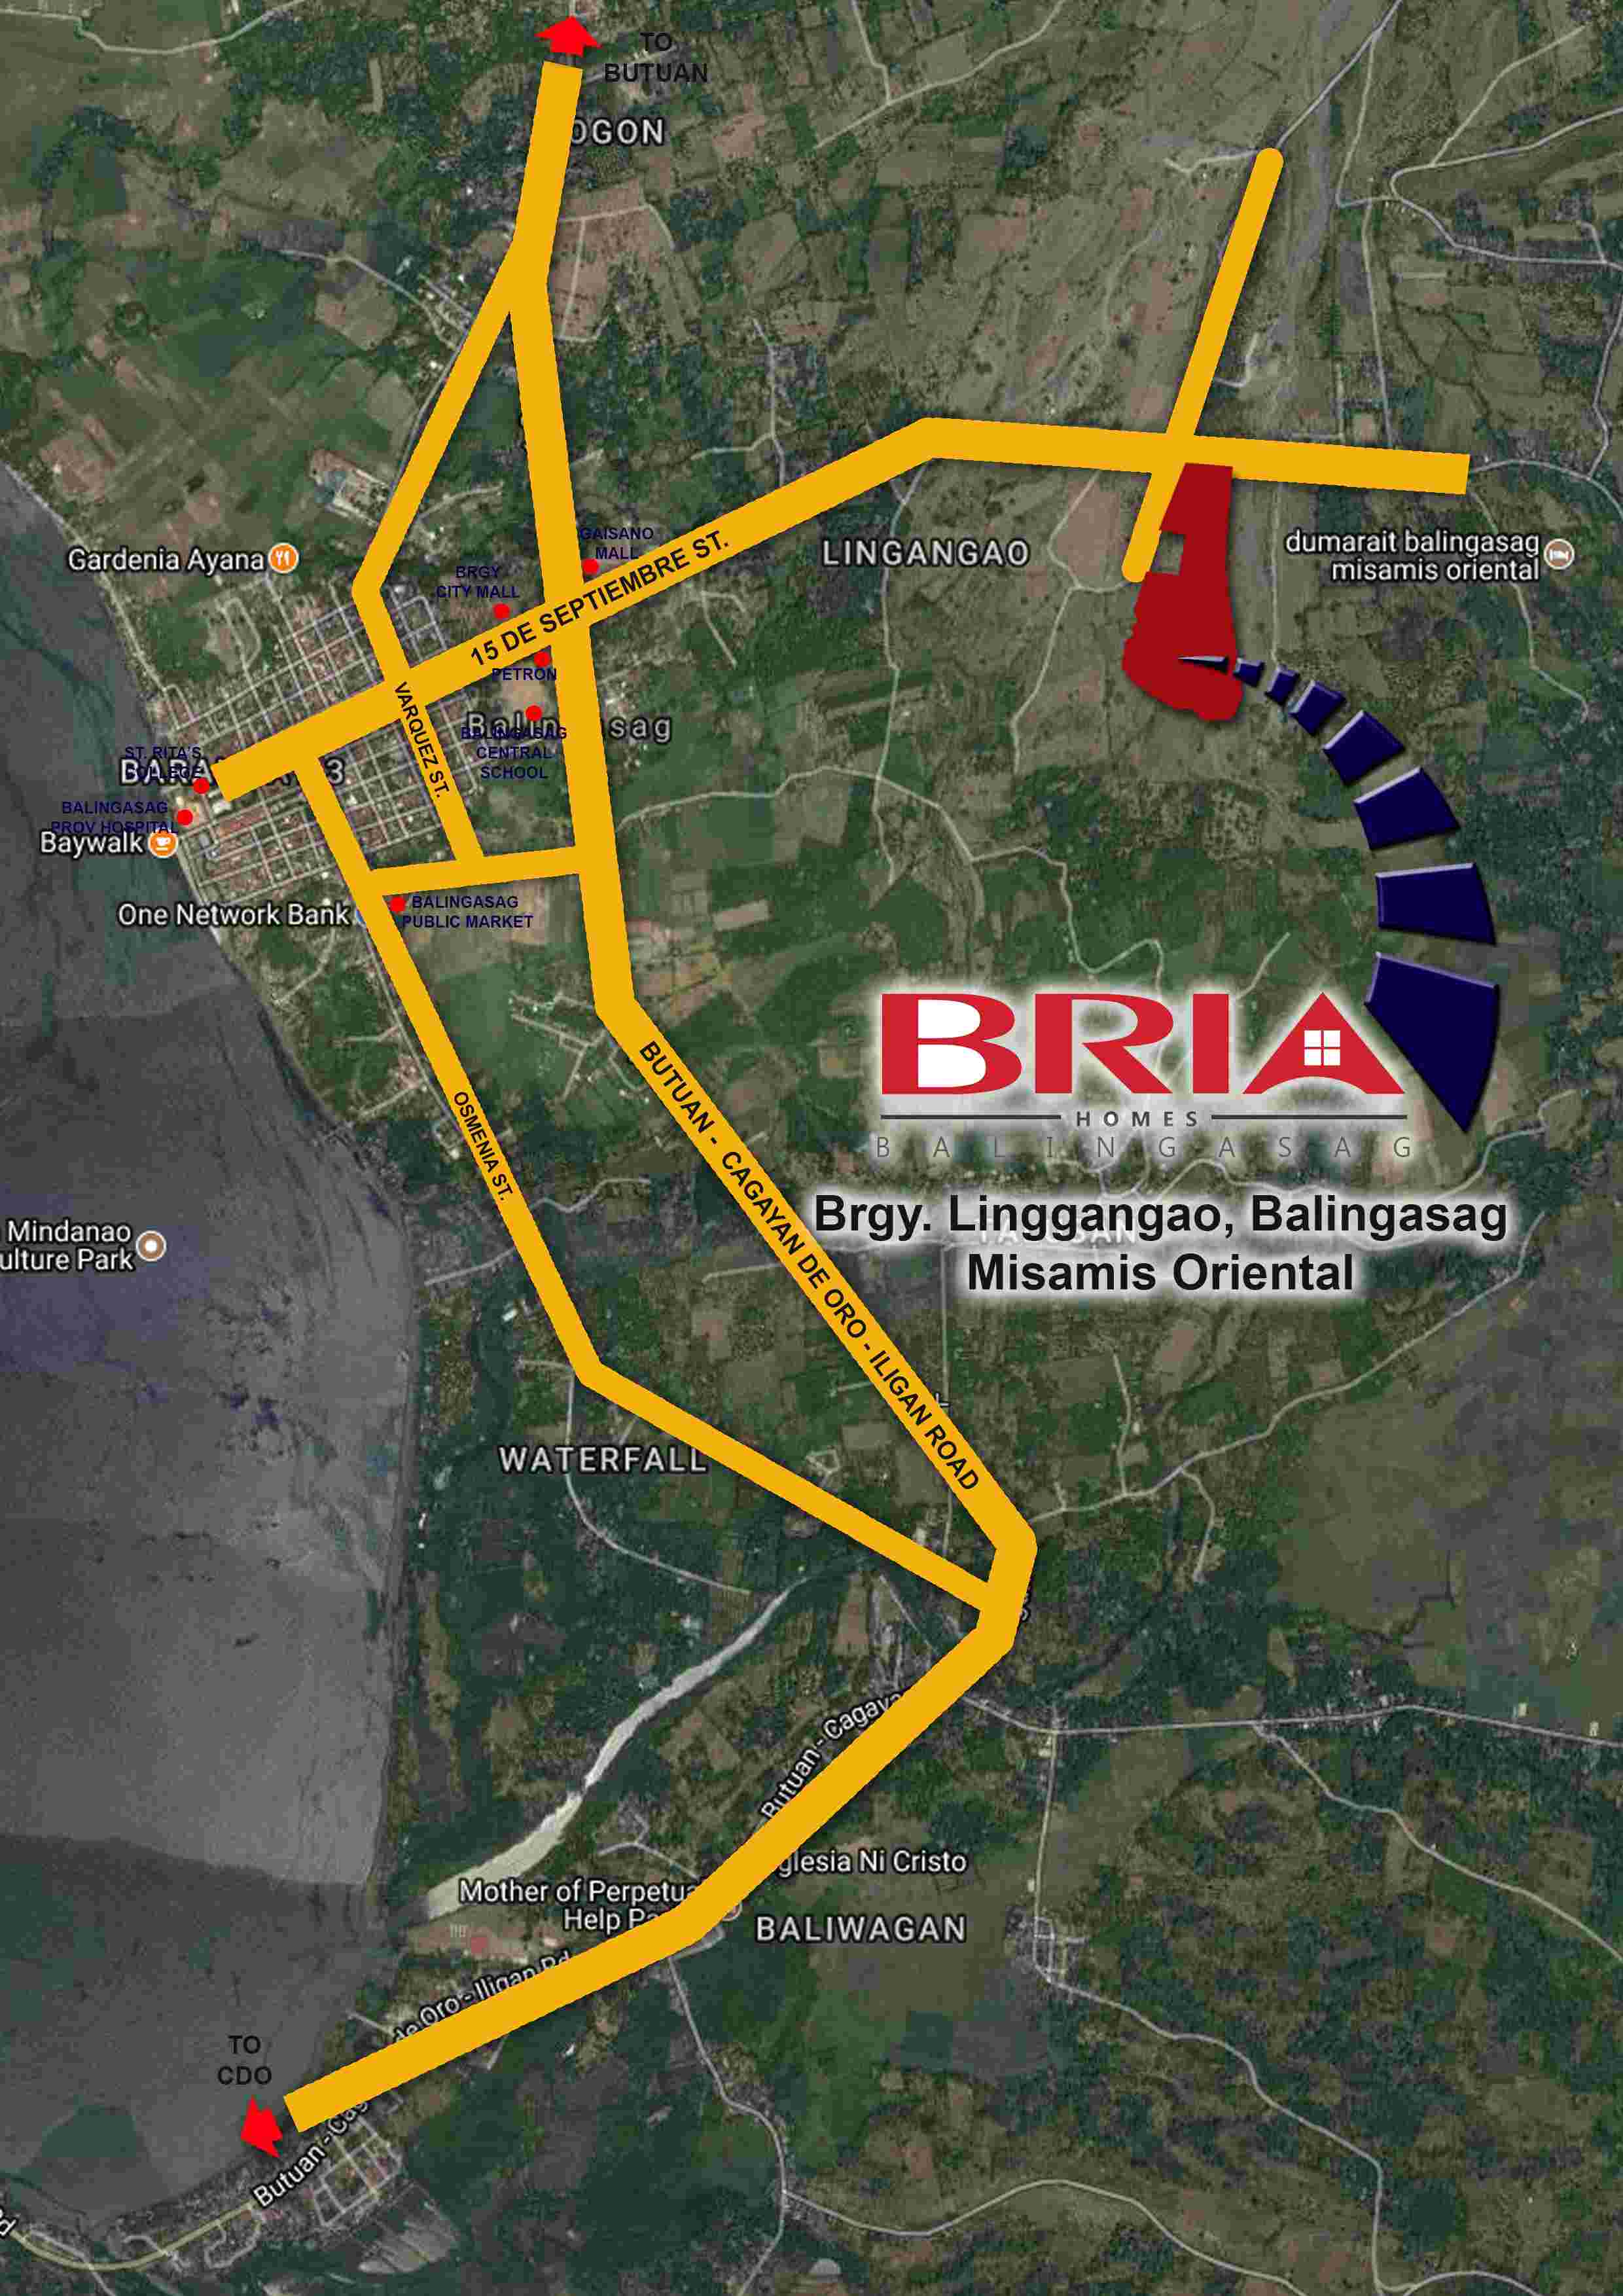 Bria-Homes-Balingasag-Vicinity-Map-1683080928.jpg